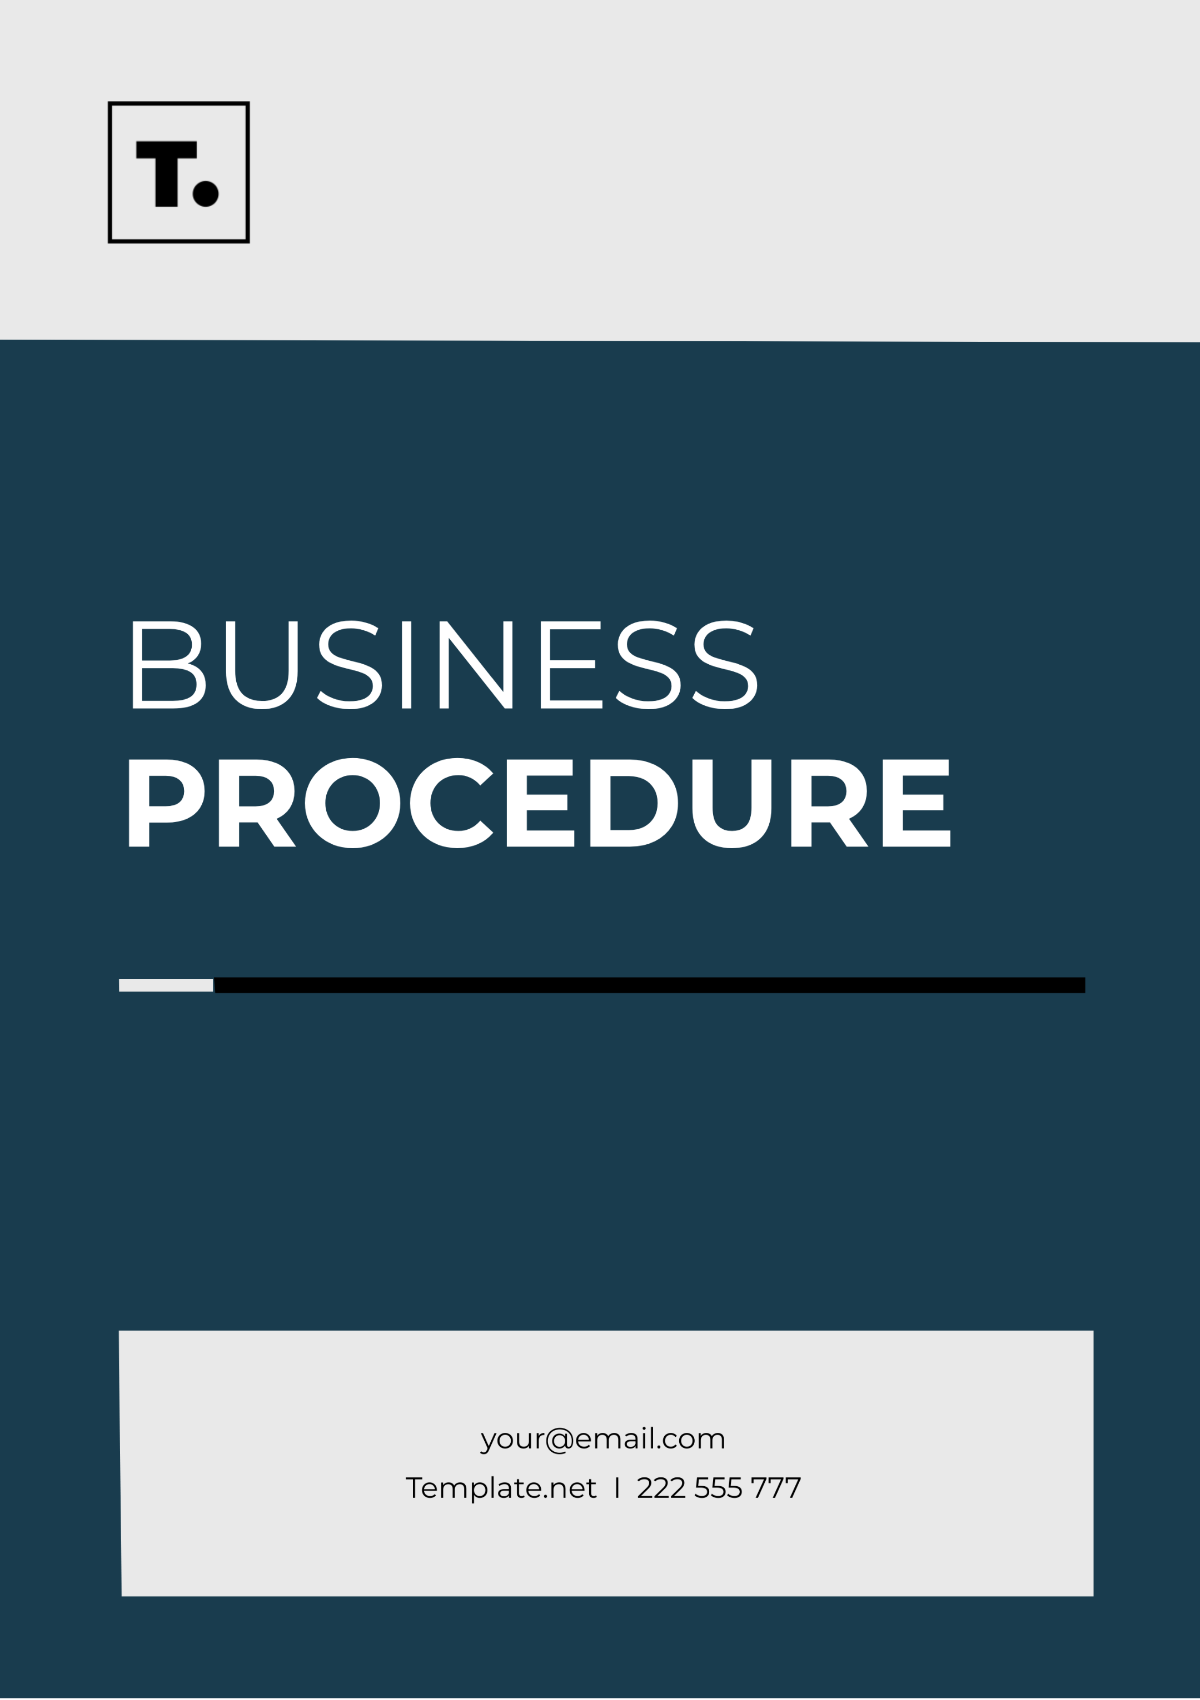 Business Procedure Template